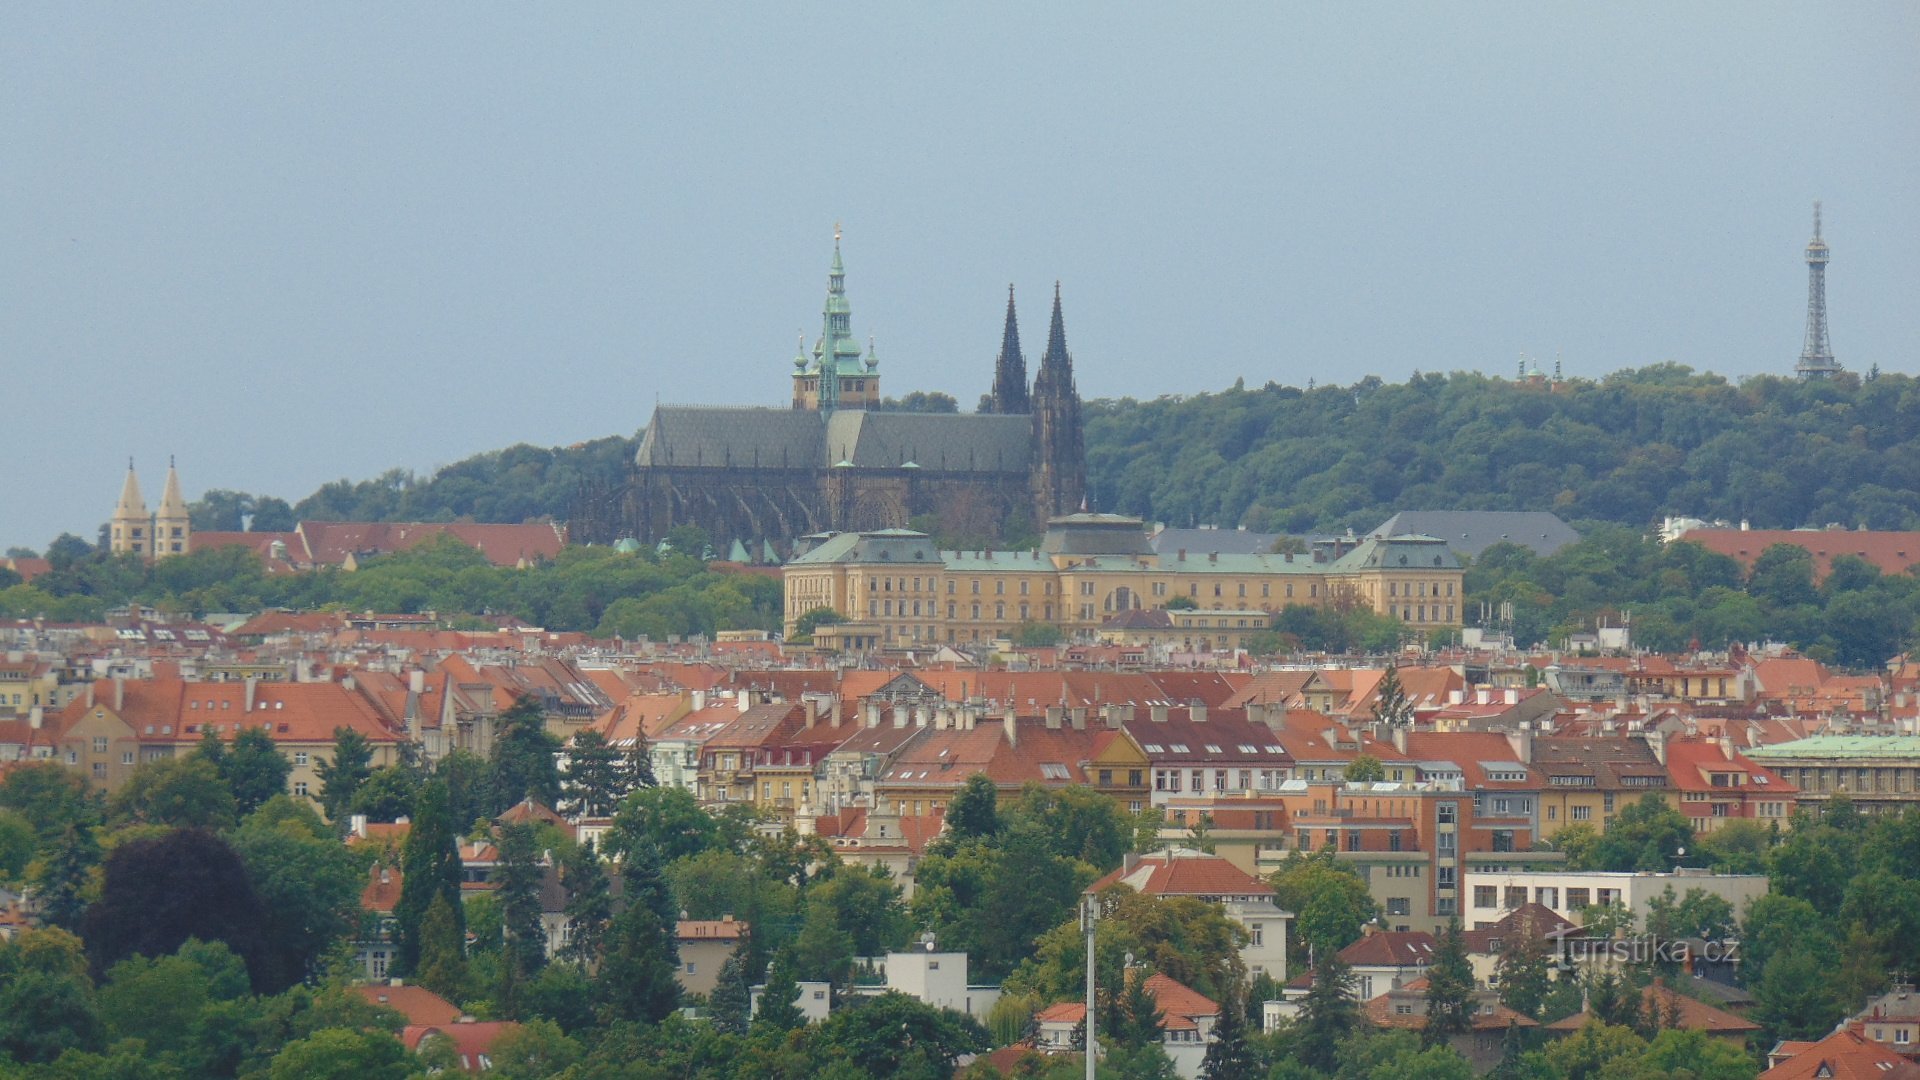 Näkymä Prahan linnalle Zakázankasta.